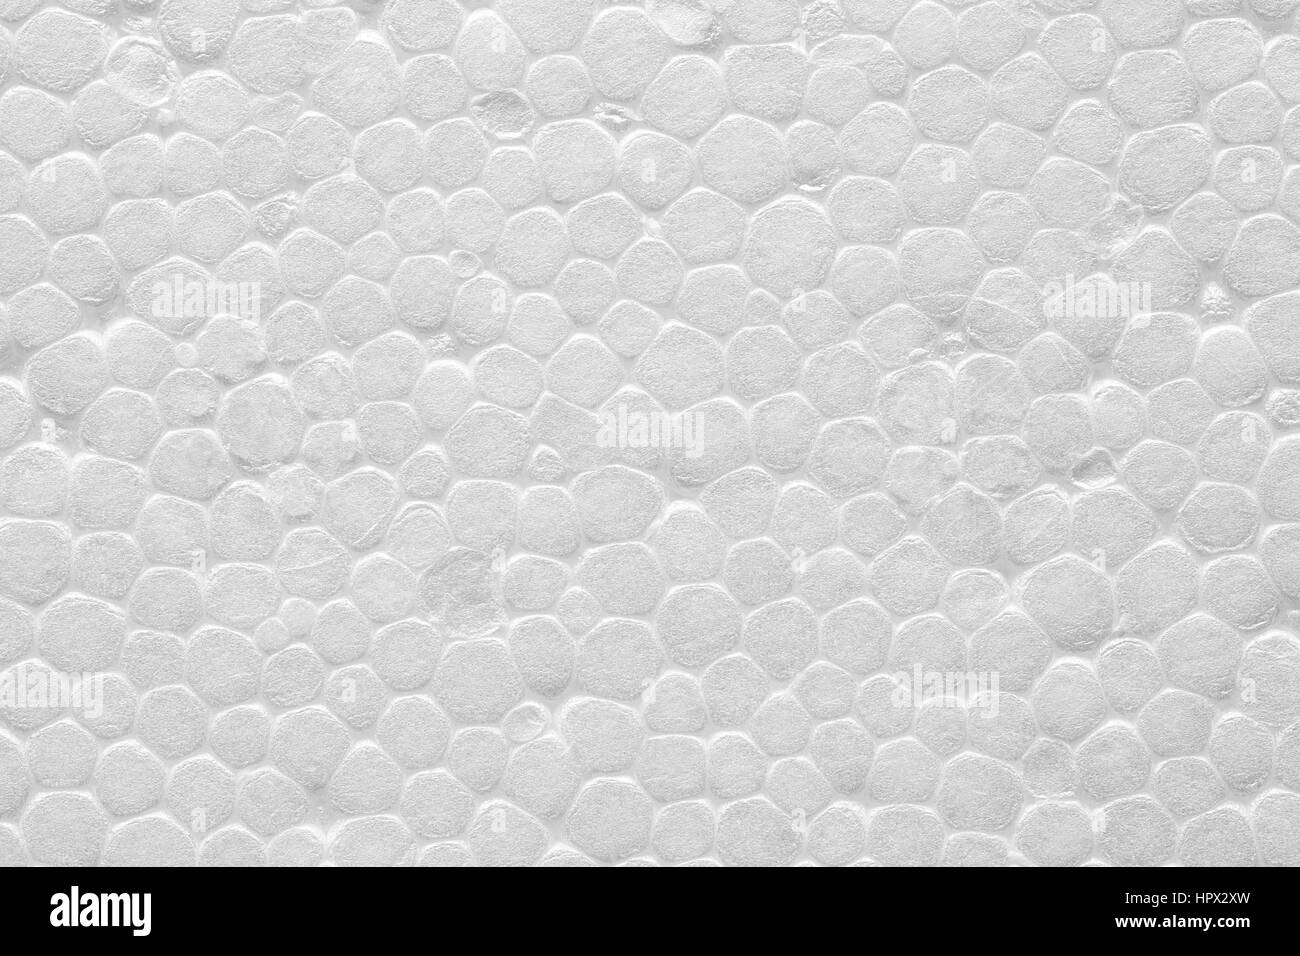 Qualitativ hochwertige Nahaufnahme Bild von weißem Polystyrol-Hartschaum, Styropor Textur Hintergrund. Stockfoto